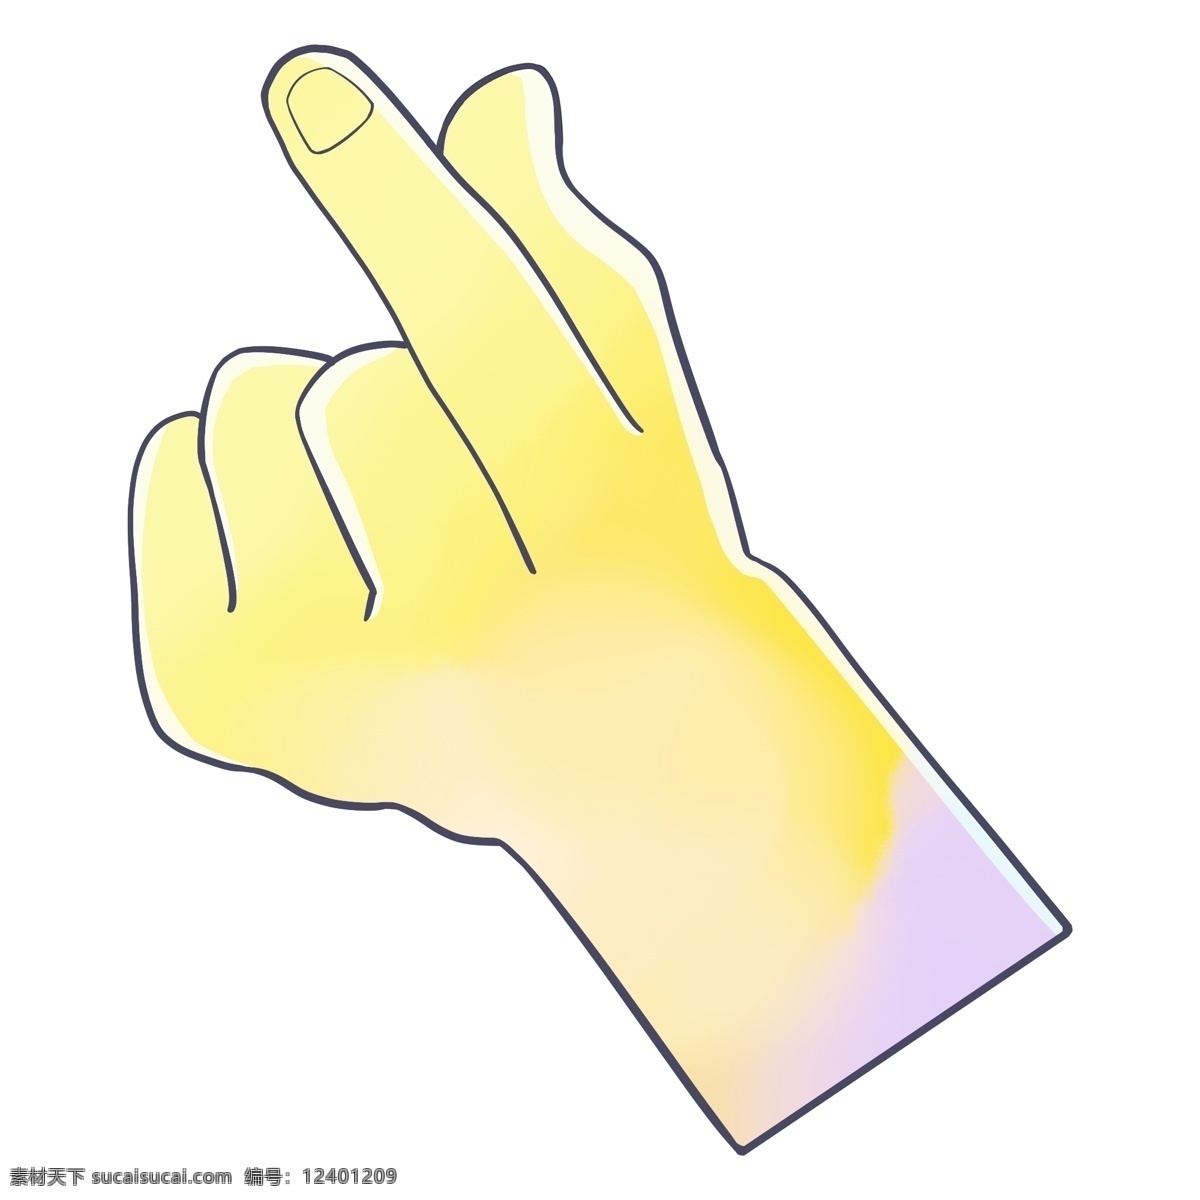 黄色 伸 手指 手势 插画 黄色的手势 伸手指手势 卡通插画 手部动作 姿势 手部